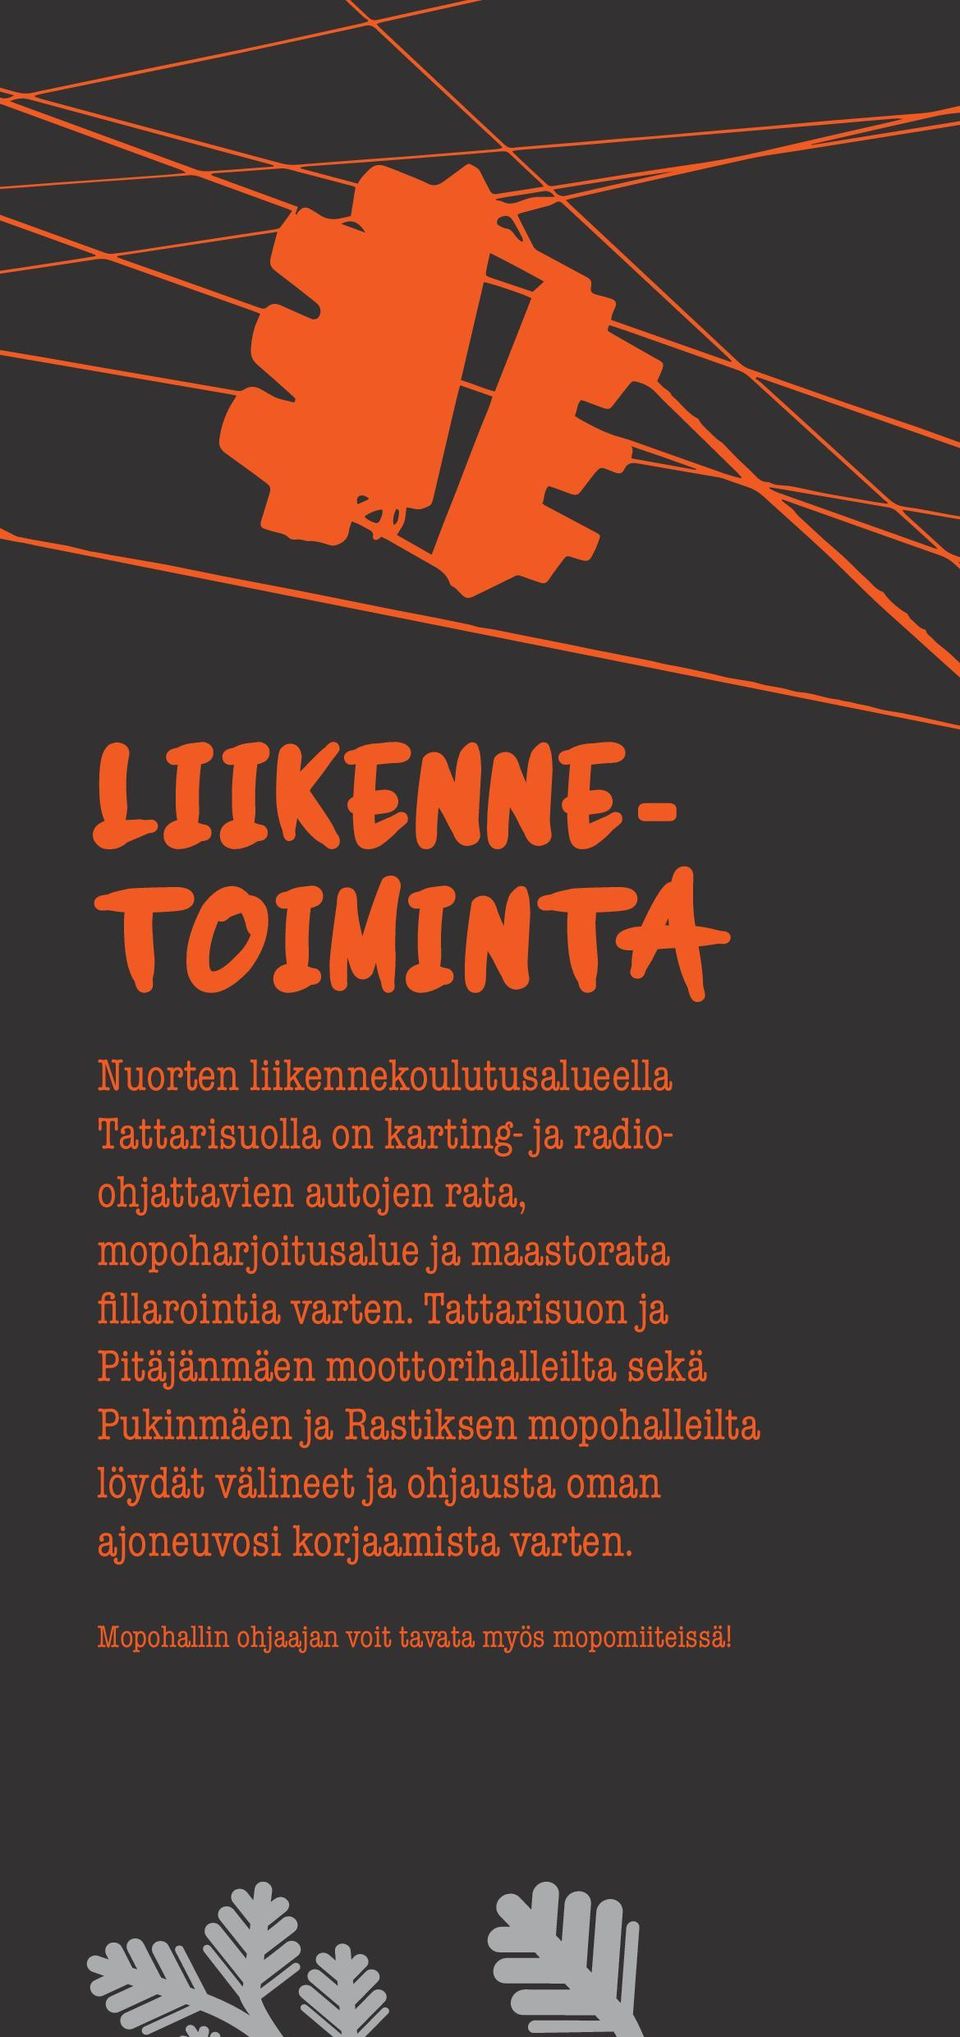 Tattarisuon ja Pitäjänmäen moottorihalleilta sekä Pukinmäen ja Rastiksen mopohalleilta